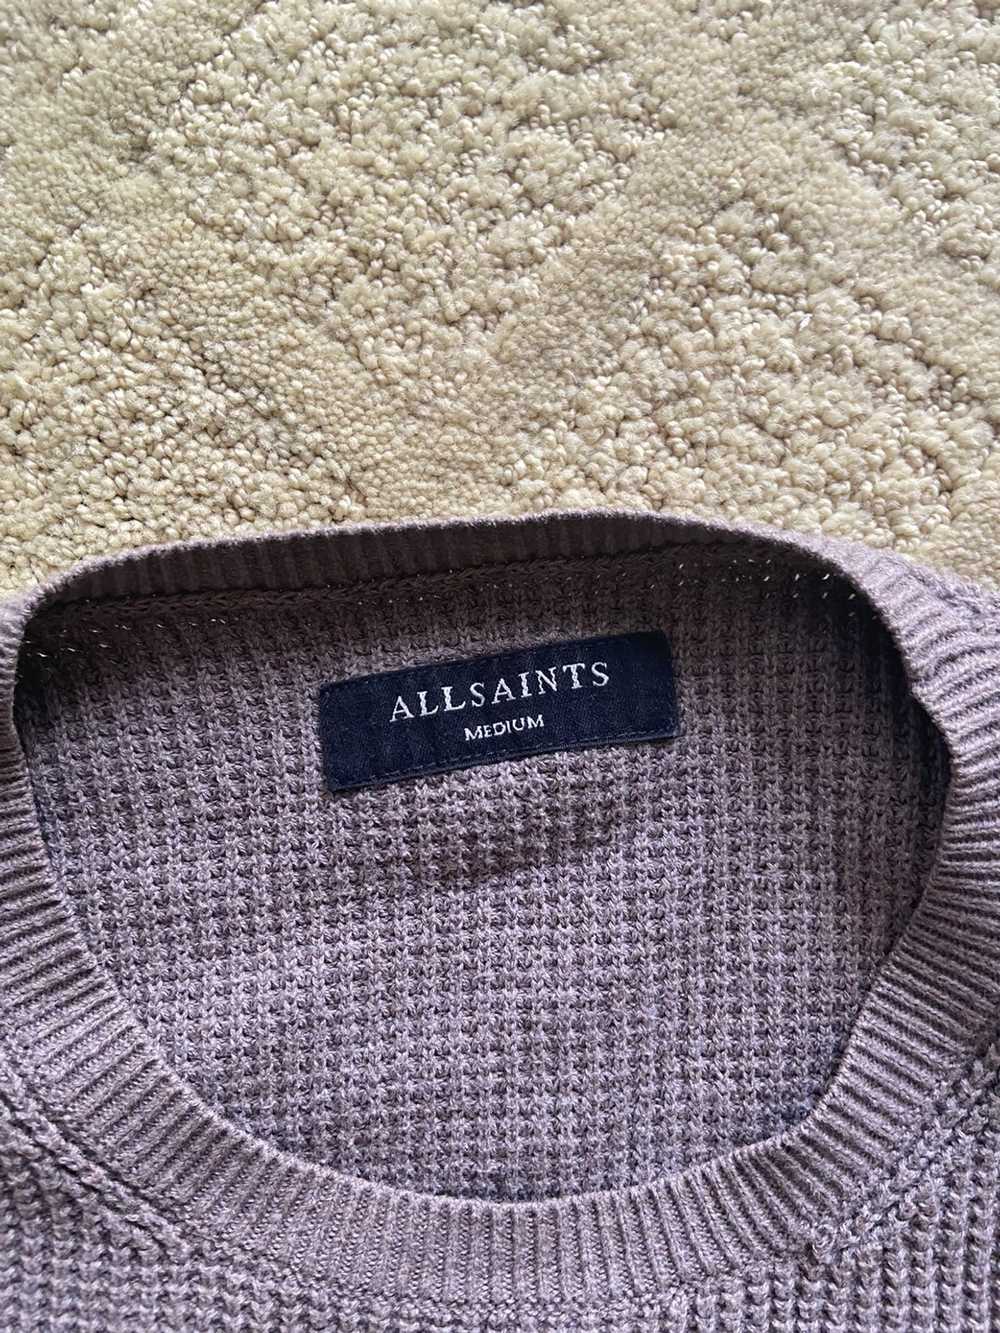 Allsaints Allsaints Knit Sweater - image 2